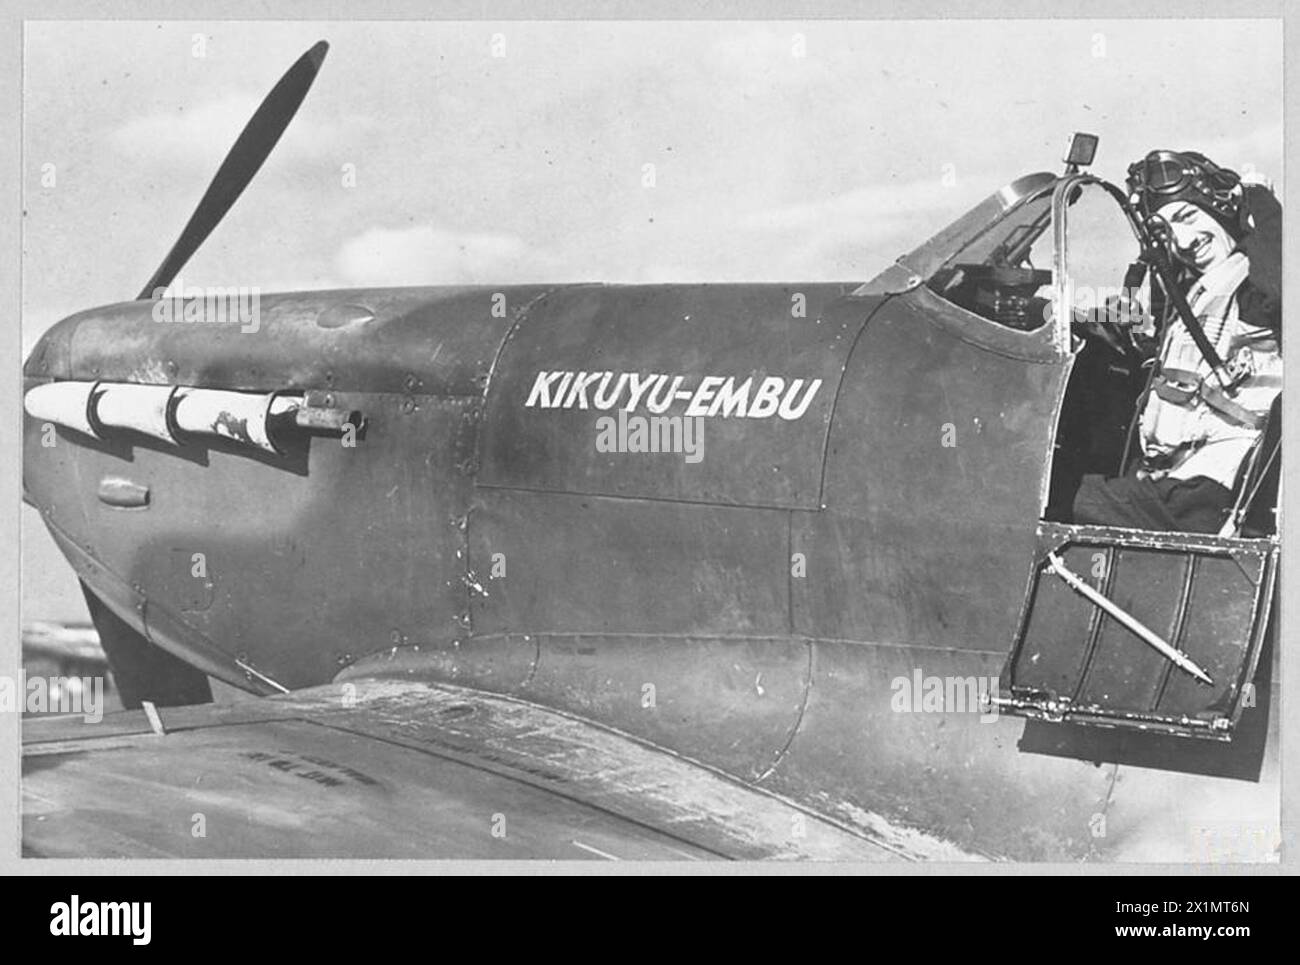 SPITFIRE DONATO DAI CAPI DEL KENYA IN FUNZIONE CON R.A.F. - 7678. Un giovane sergente pilota - il sergente J. Bunte della Florida - che serve in una stazione di caccia R.A.F. con il suo Spitfire 'KIKUYU-EMBU', la Royal Air Force Foto Stock